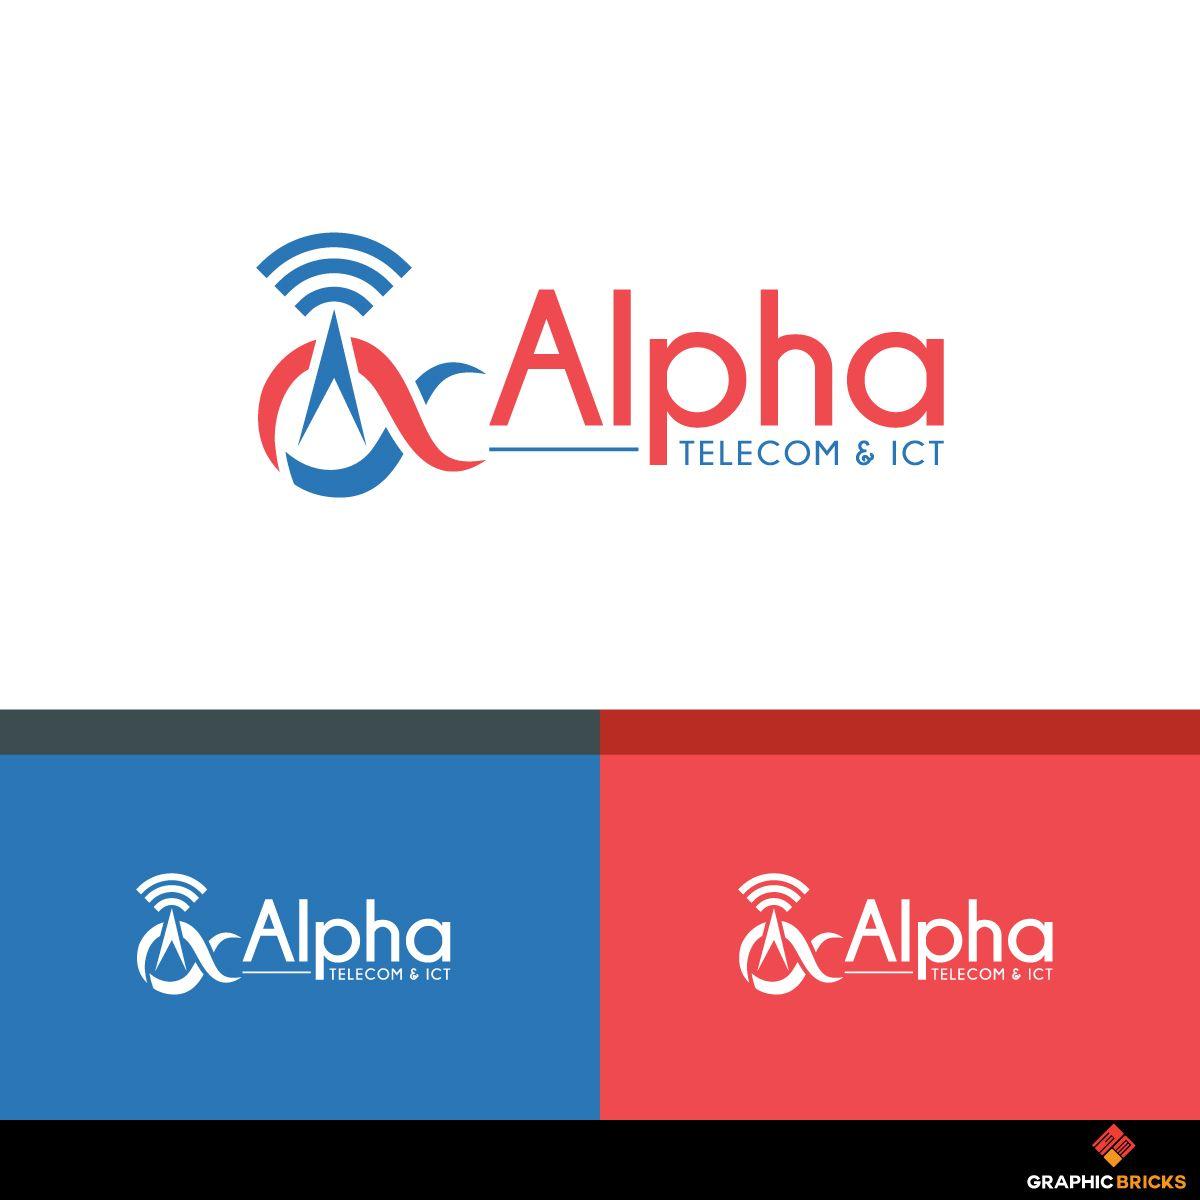 Telecom Company Logo - Serious, Professional, Telecommunications Logo Design for Alpha